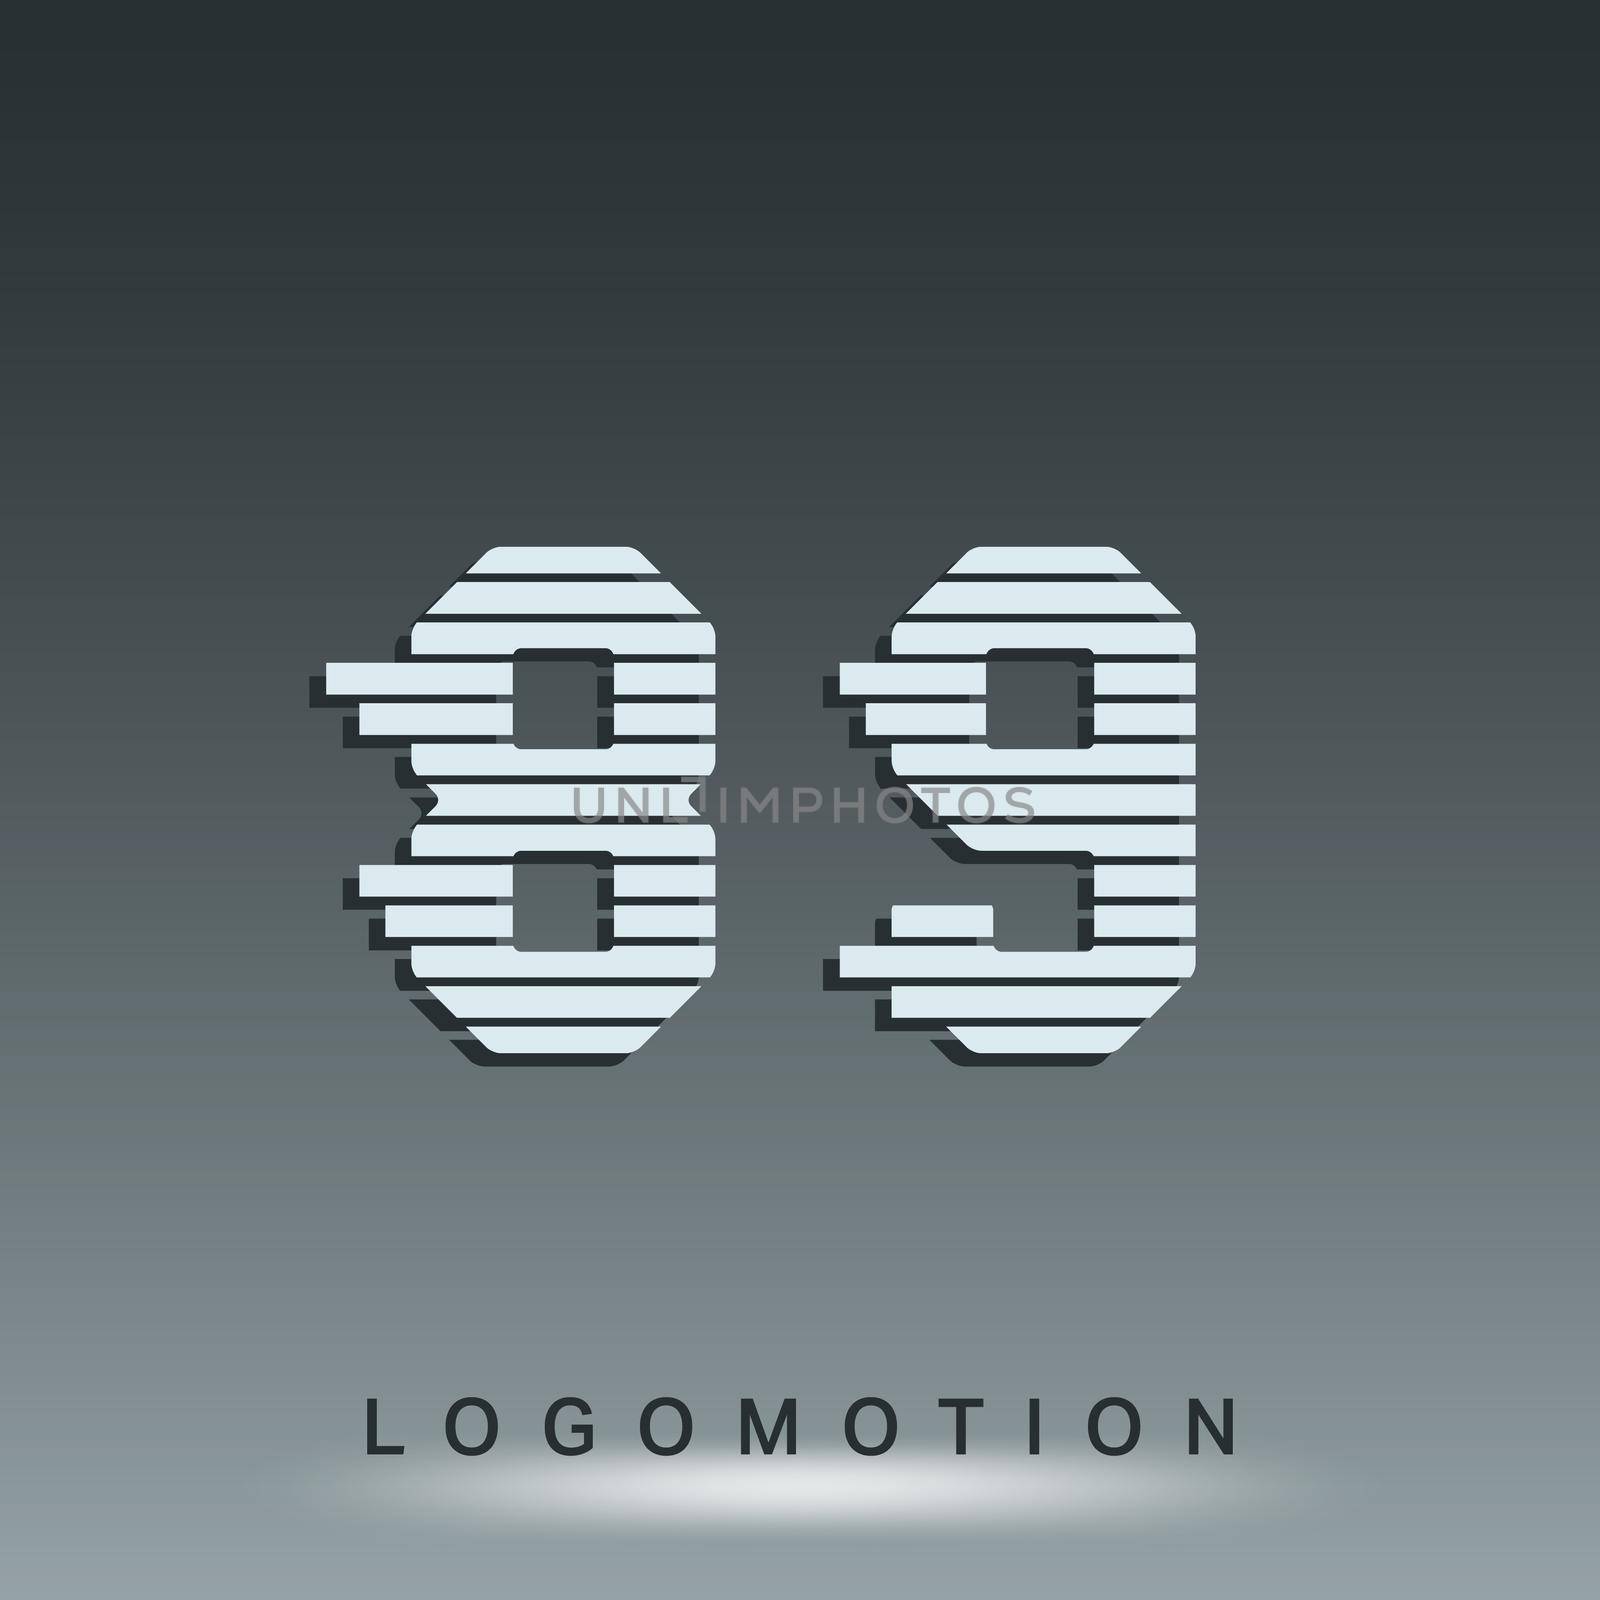 Logotype font template by Bobnevv